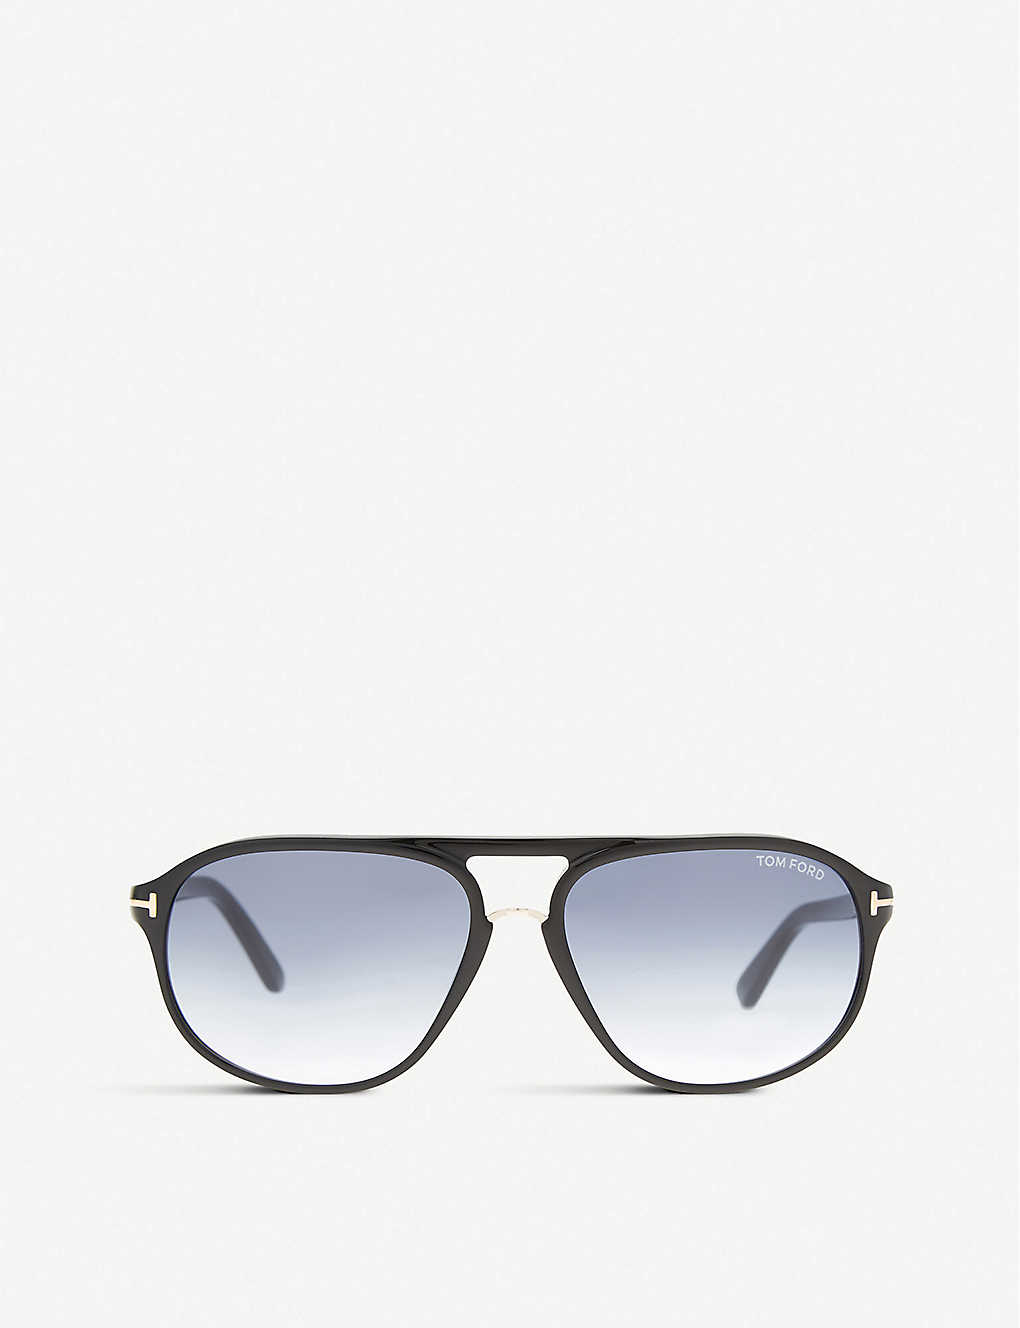 Tom Ford Mens Black Shiny Jacob Aviator Sunglasses